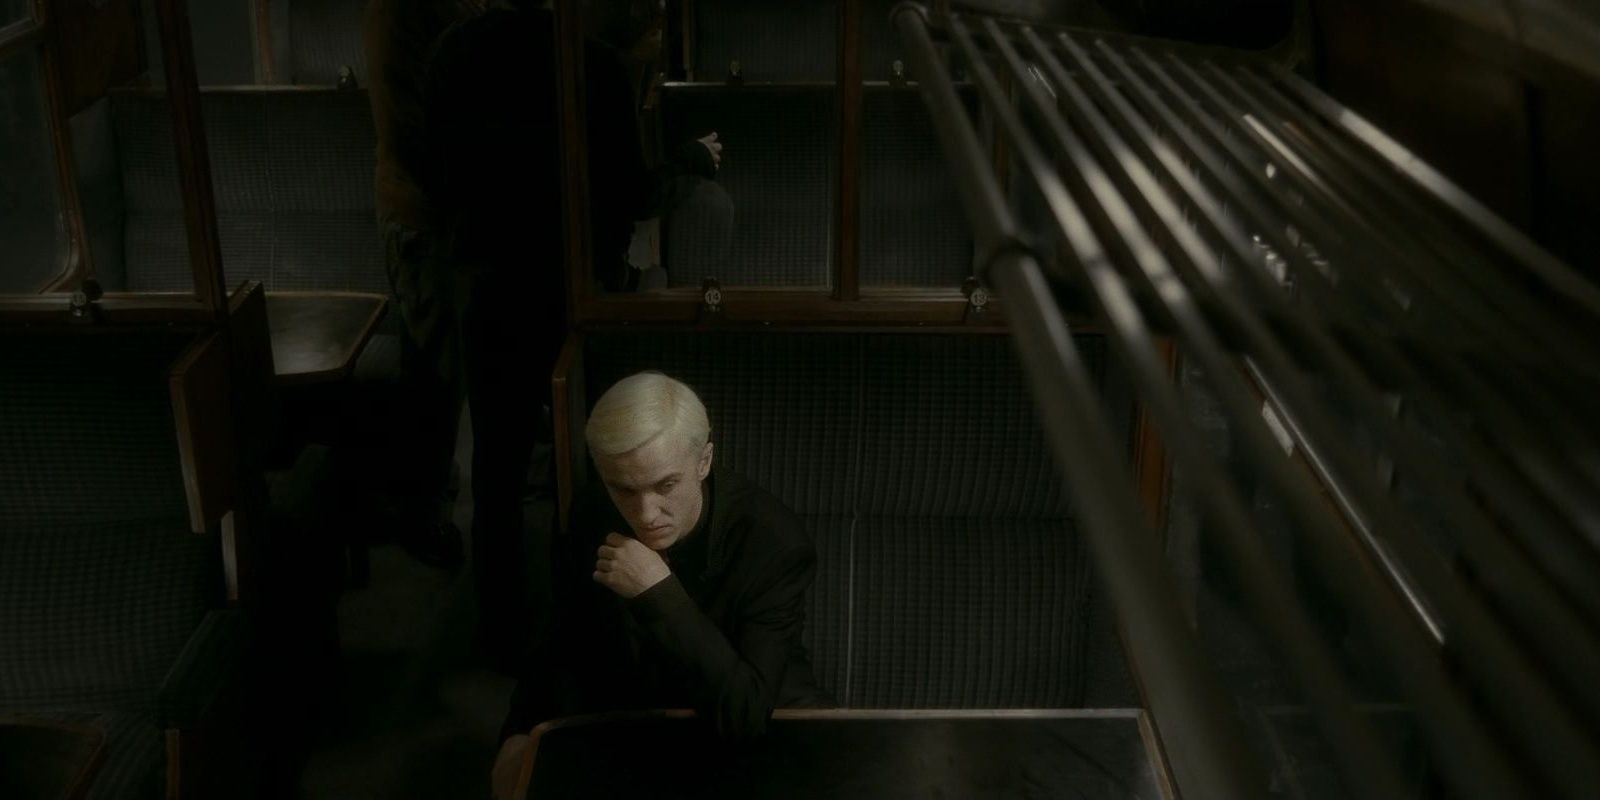 Draco Malfoy sits in a train